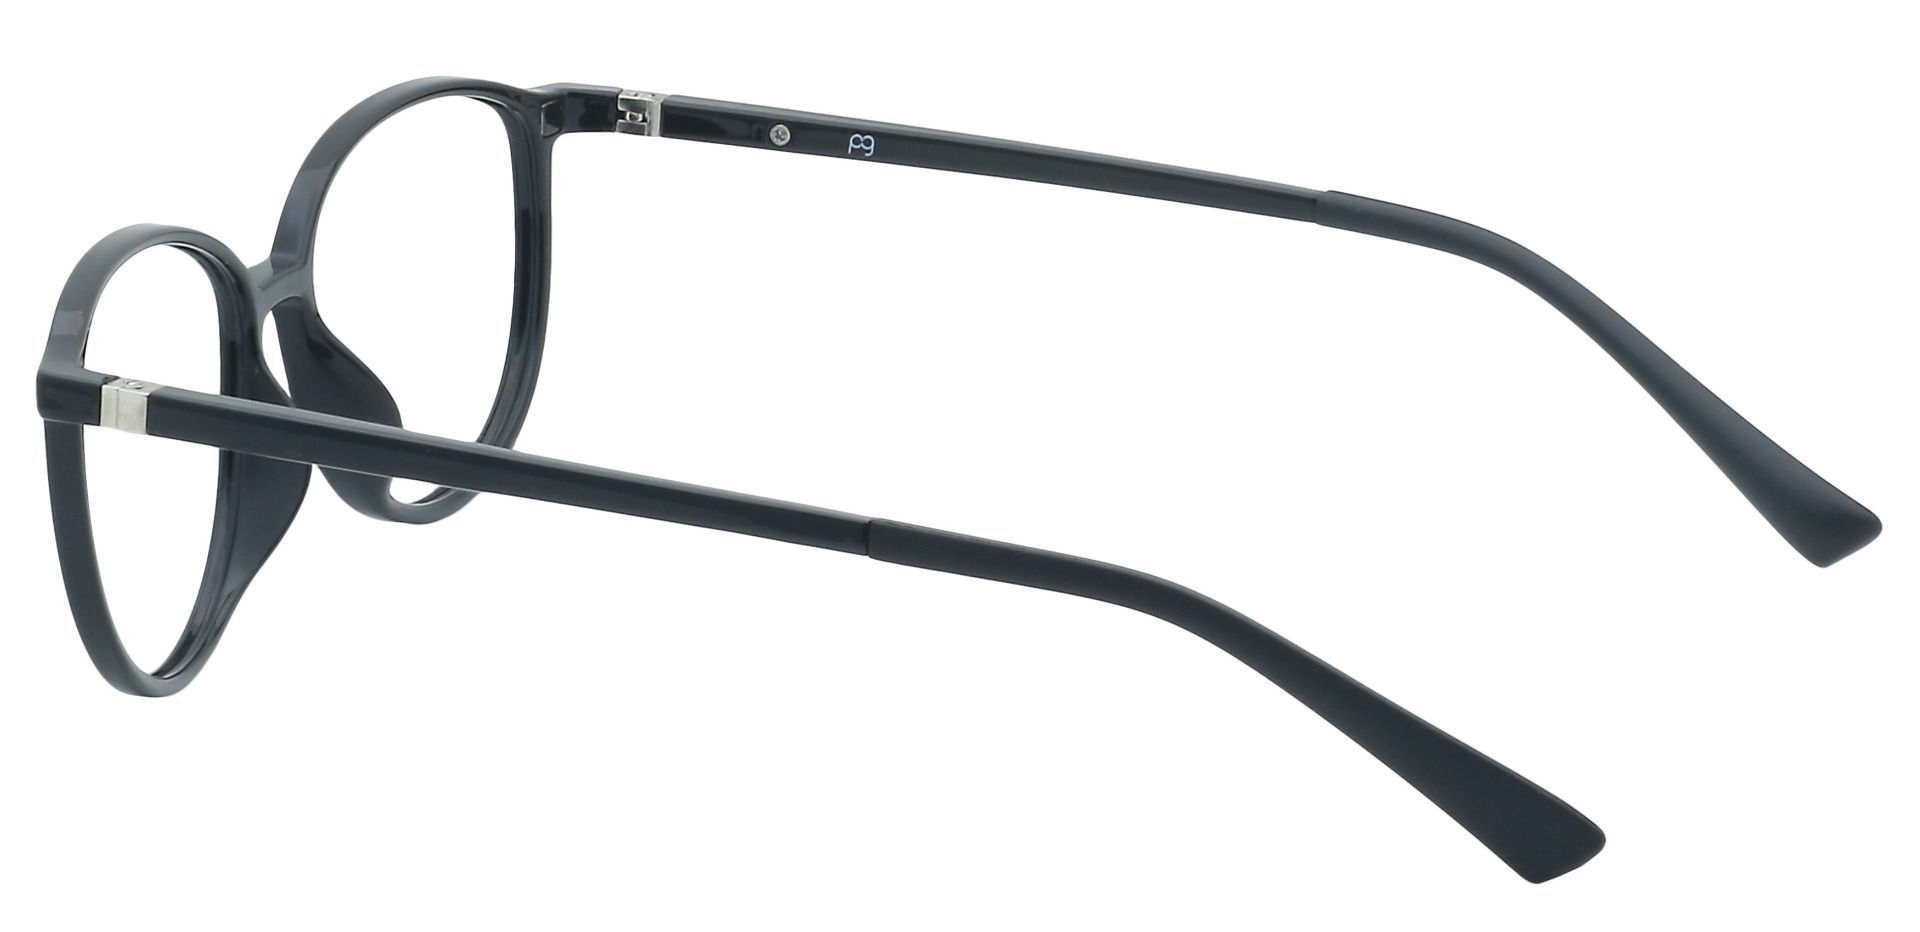 Melbourne Oval Eyeglasses Frame - Black